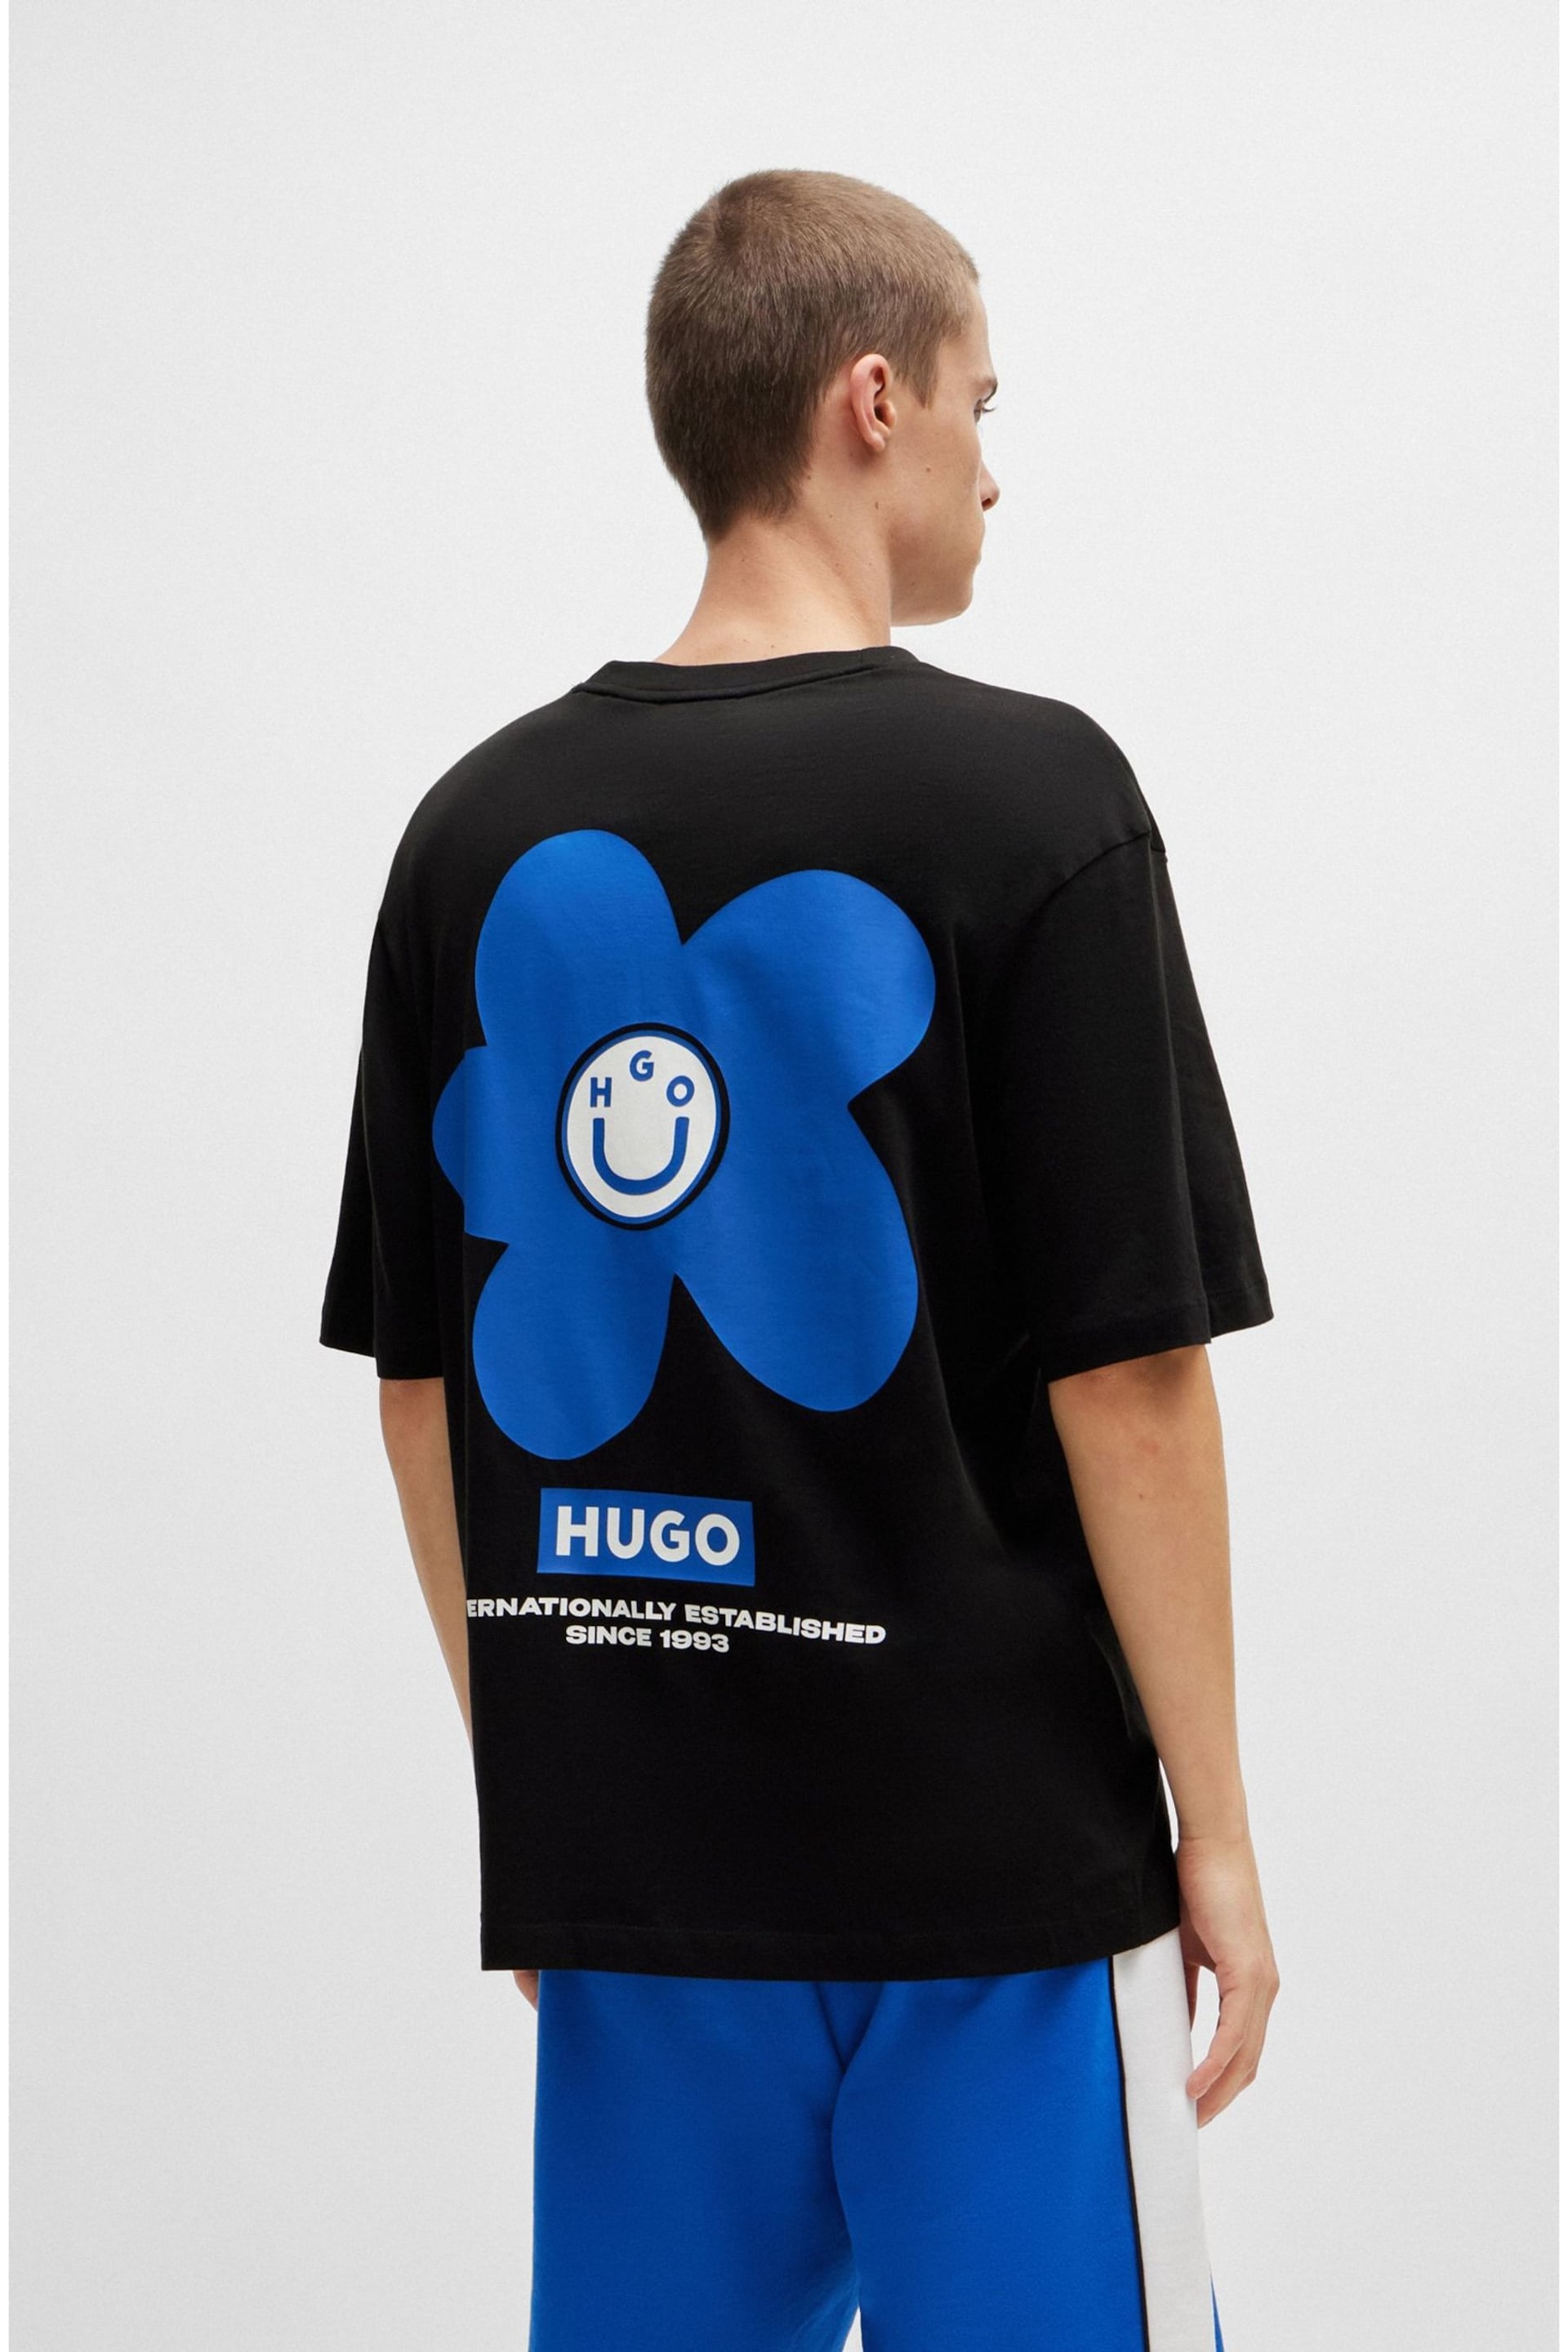 HUGO Blue Floral Graphic Back Print T-Shirt - Image 4 of 7